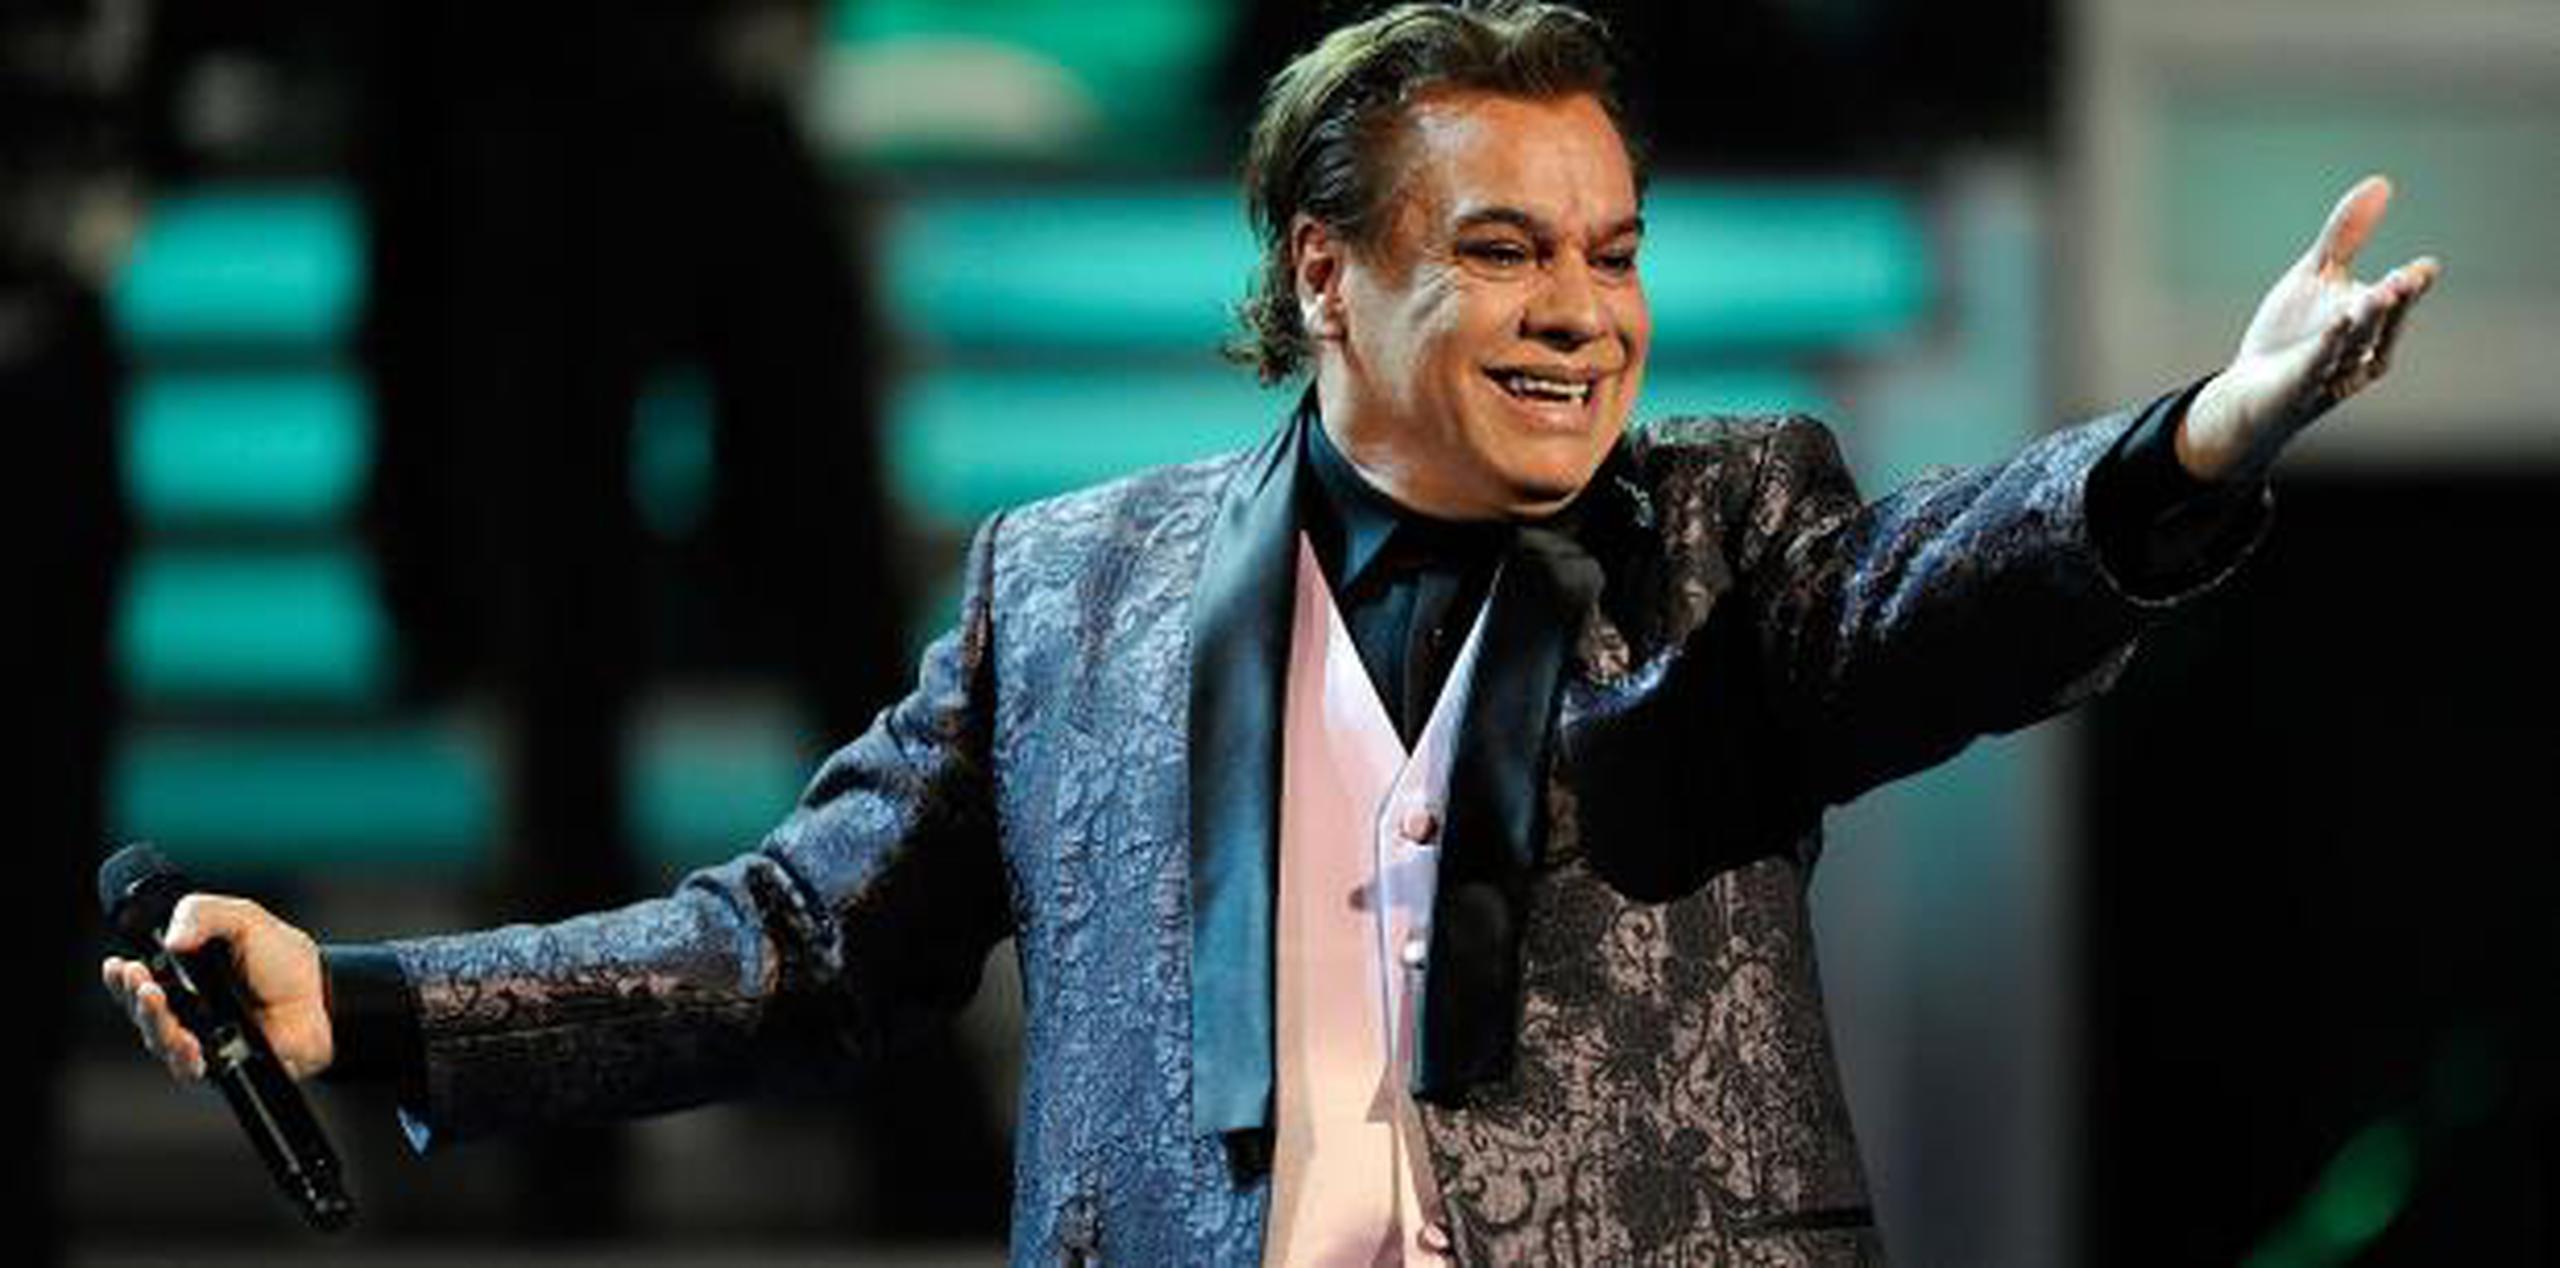 Se exhibirá, entre otros, la chaqueta que Juan Gabriel usó en su memorable actuación de 40 minutos en los Latin Grammy hace 10 años. (Archivo)